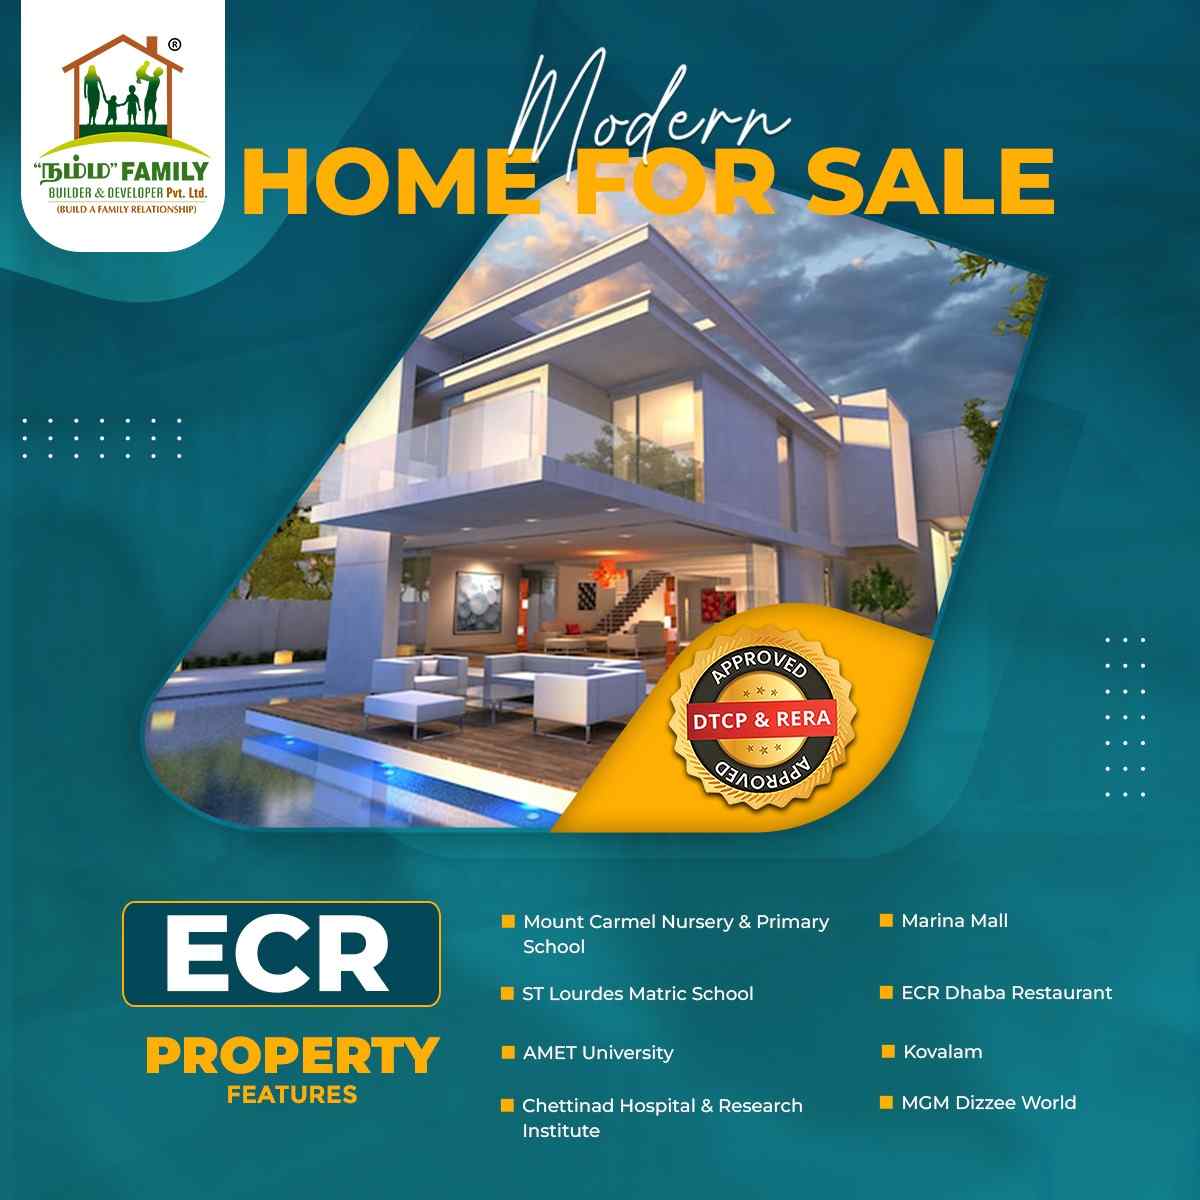 ECR Properties Cover Image - Namma Family Builder